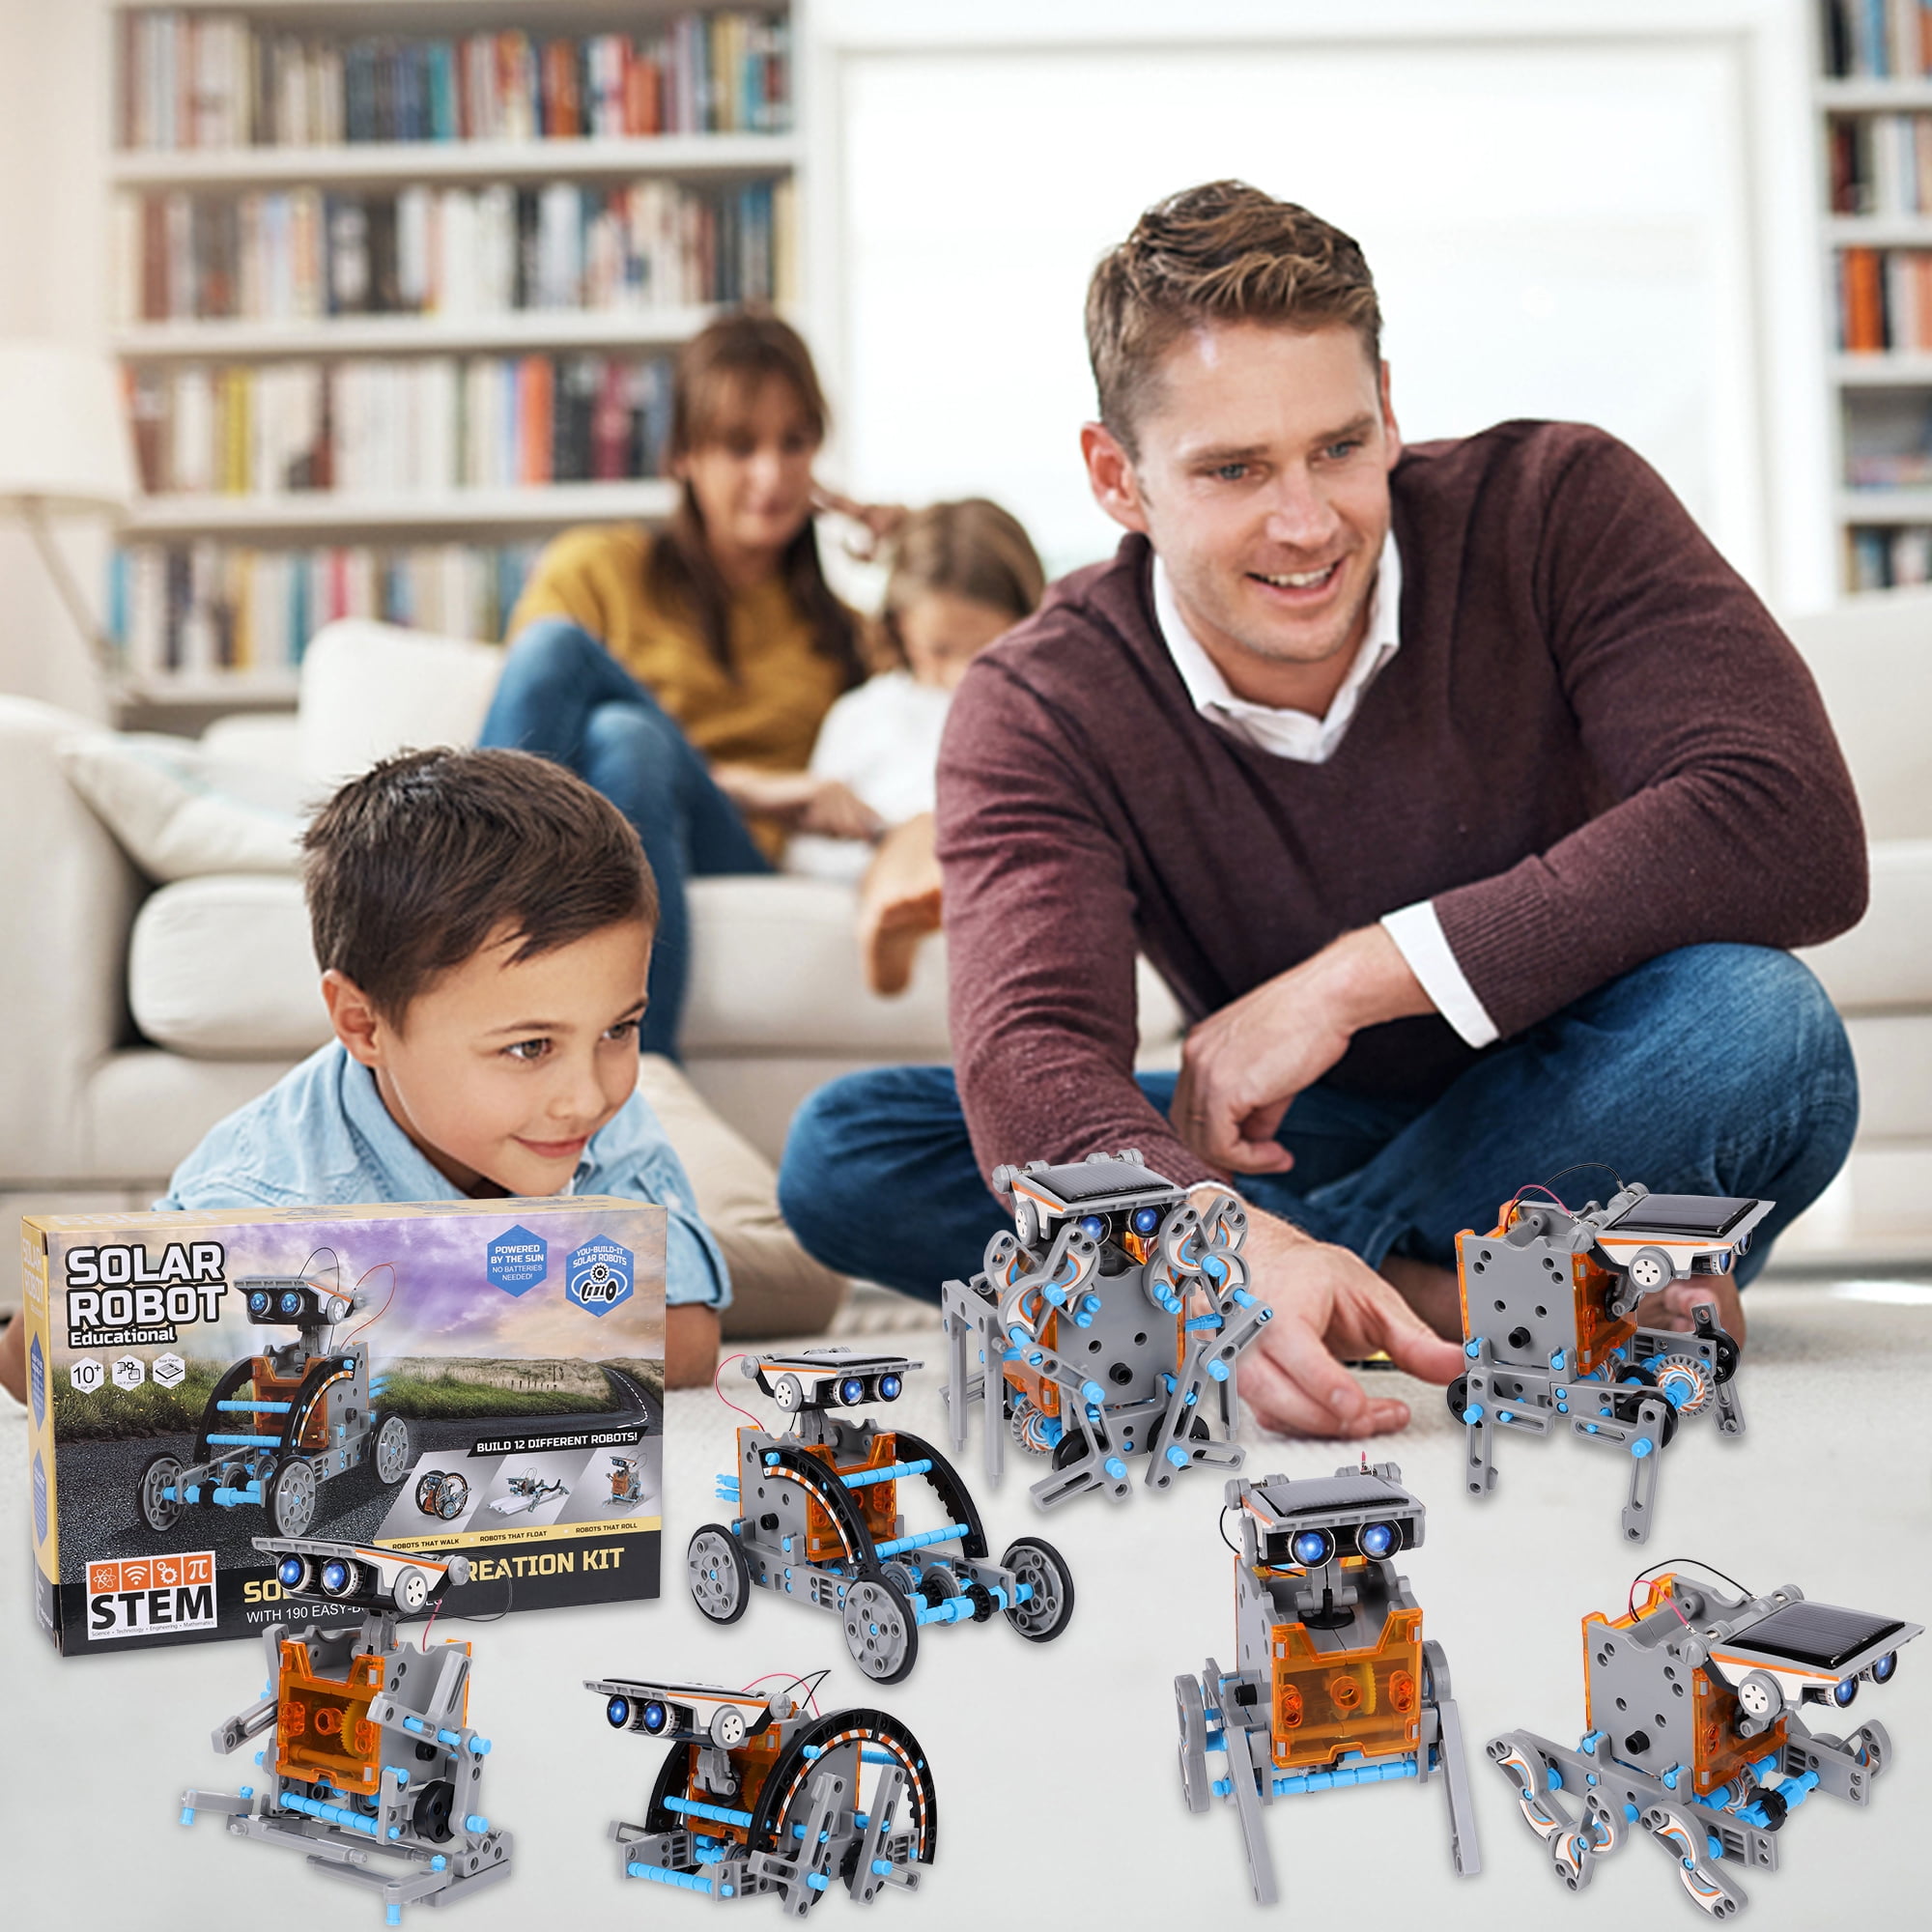 BOZTX 12-in-1 STEM Education DIY Solar Robot Toys Building Science